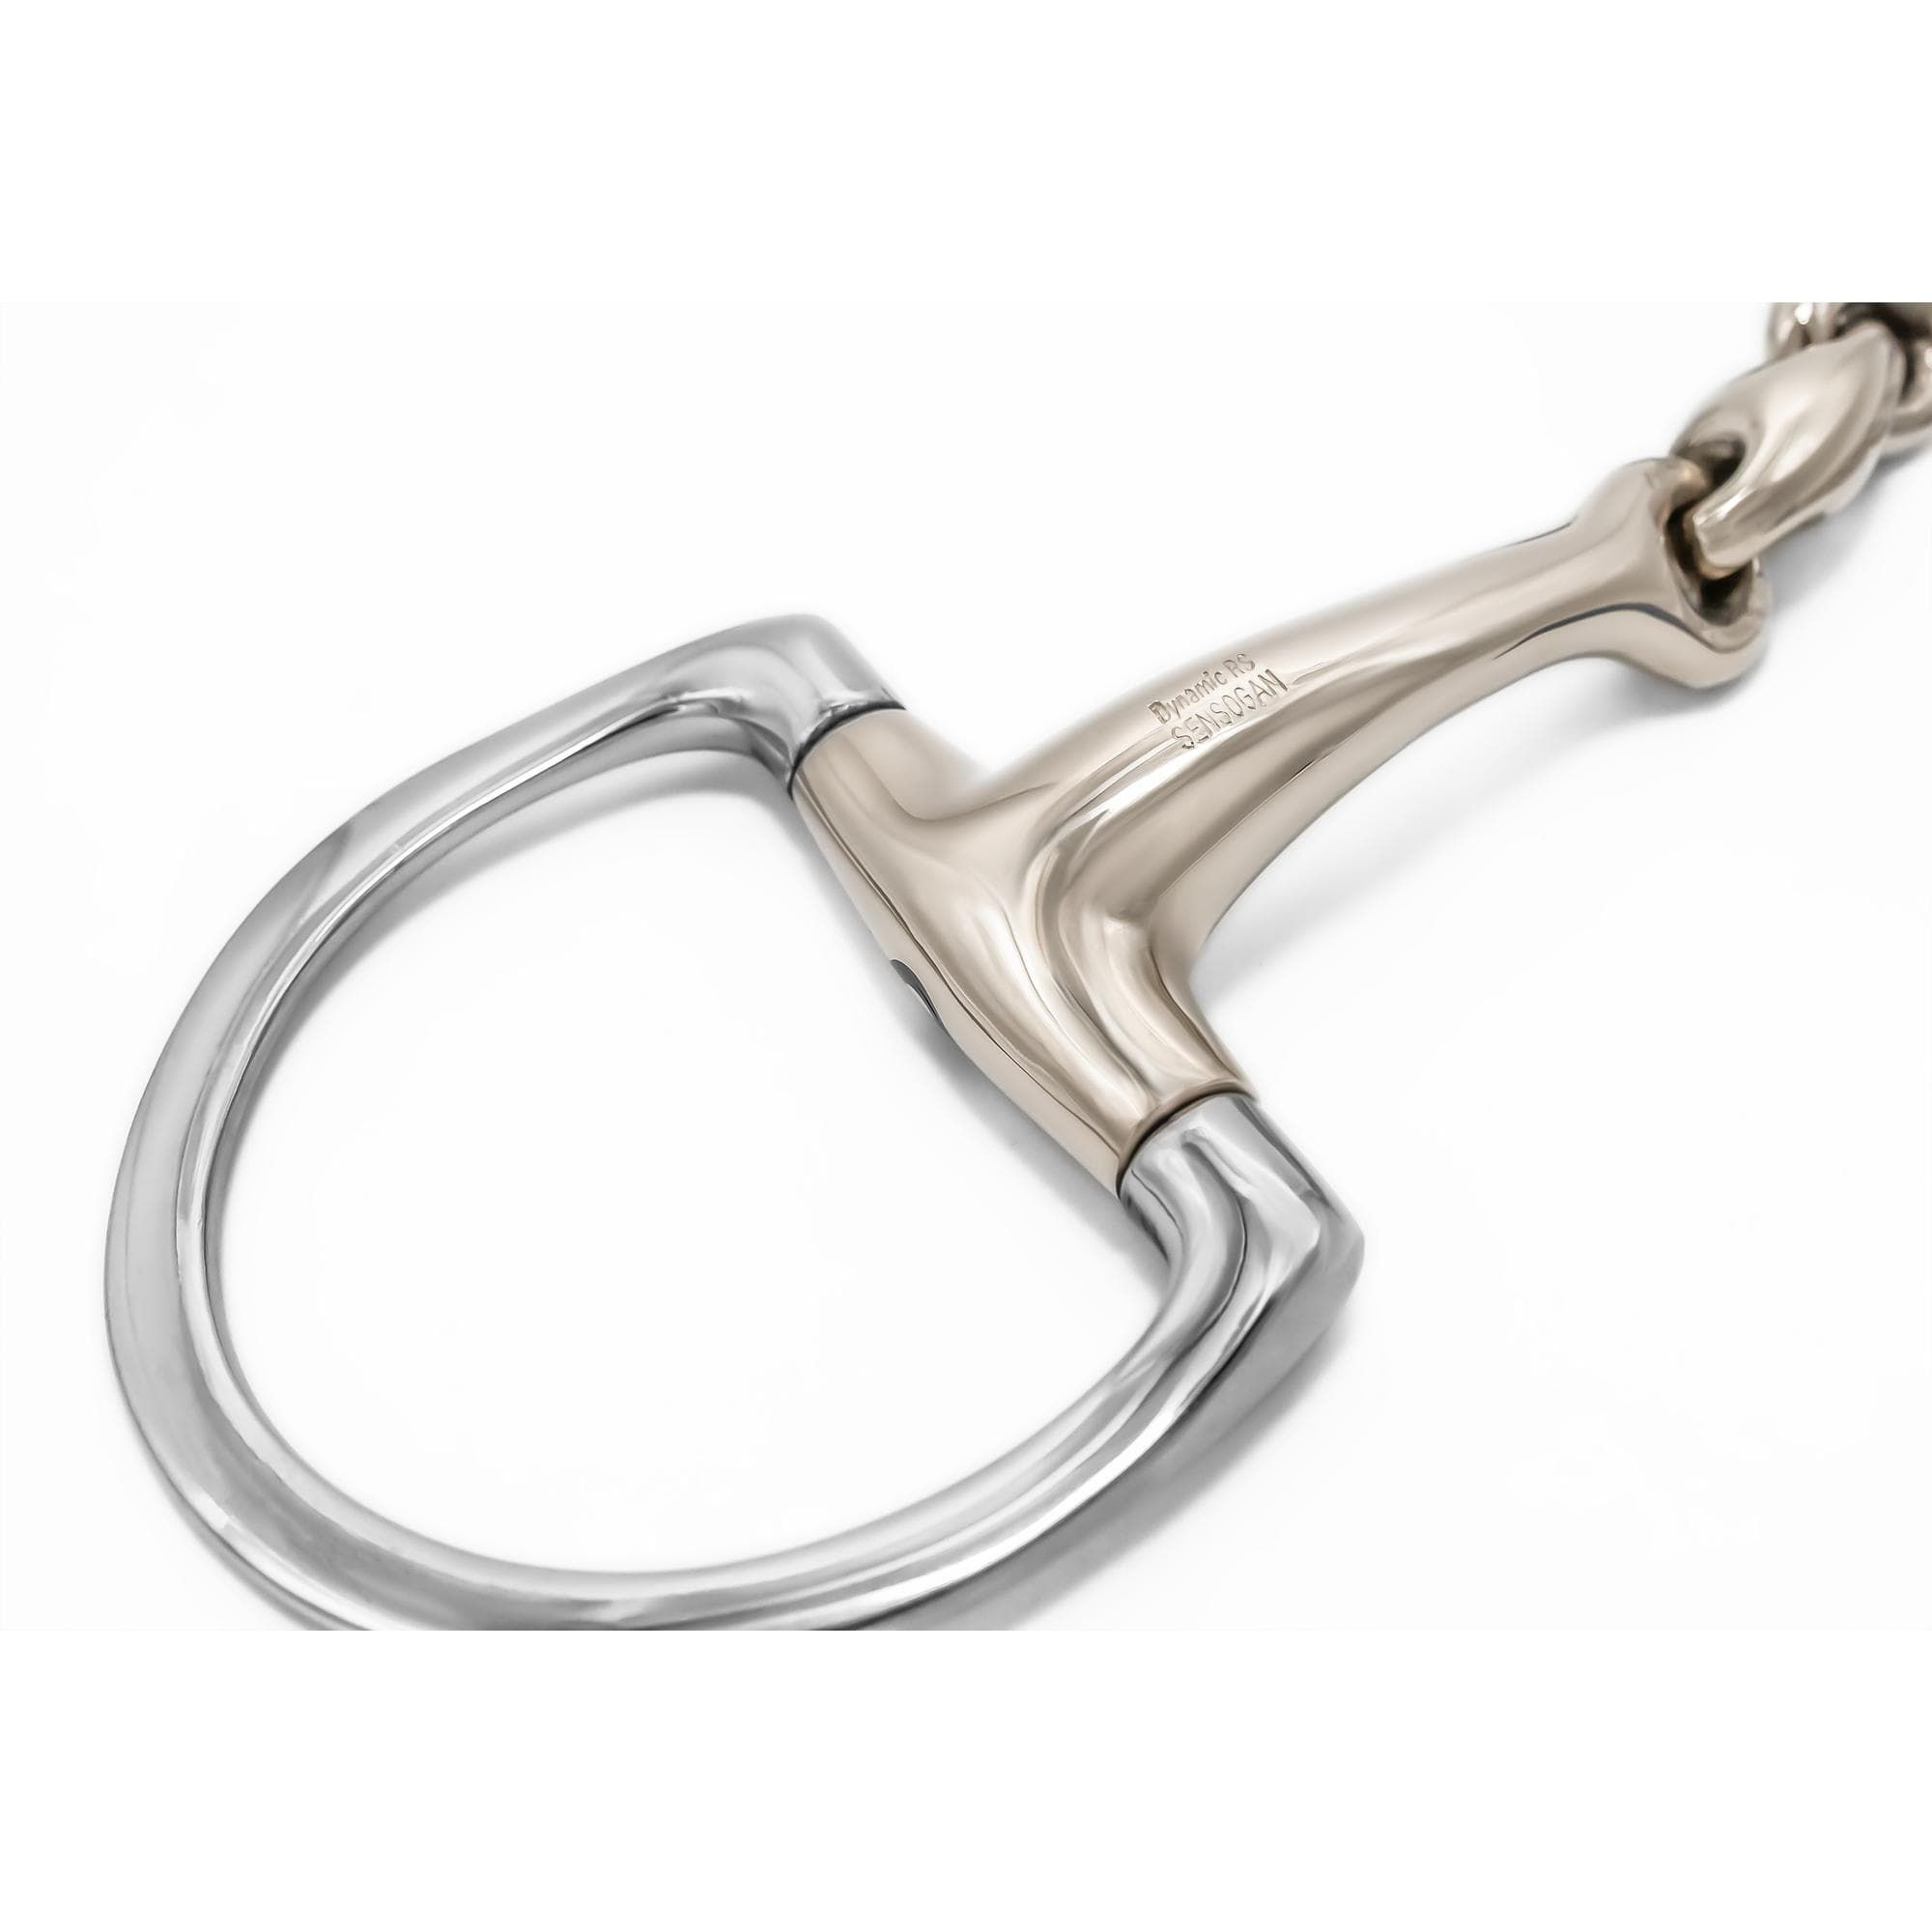 HS Sprenger Dynamic RS Olivenkopfgebiss mit D-förmigem Ring 14 mm doppelt gebrochen